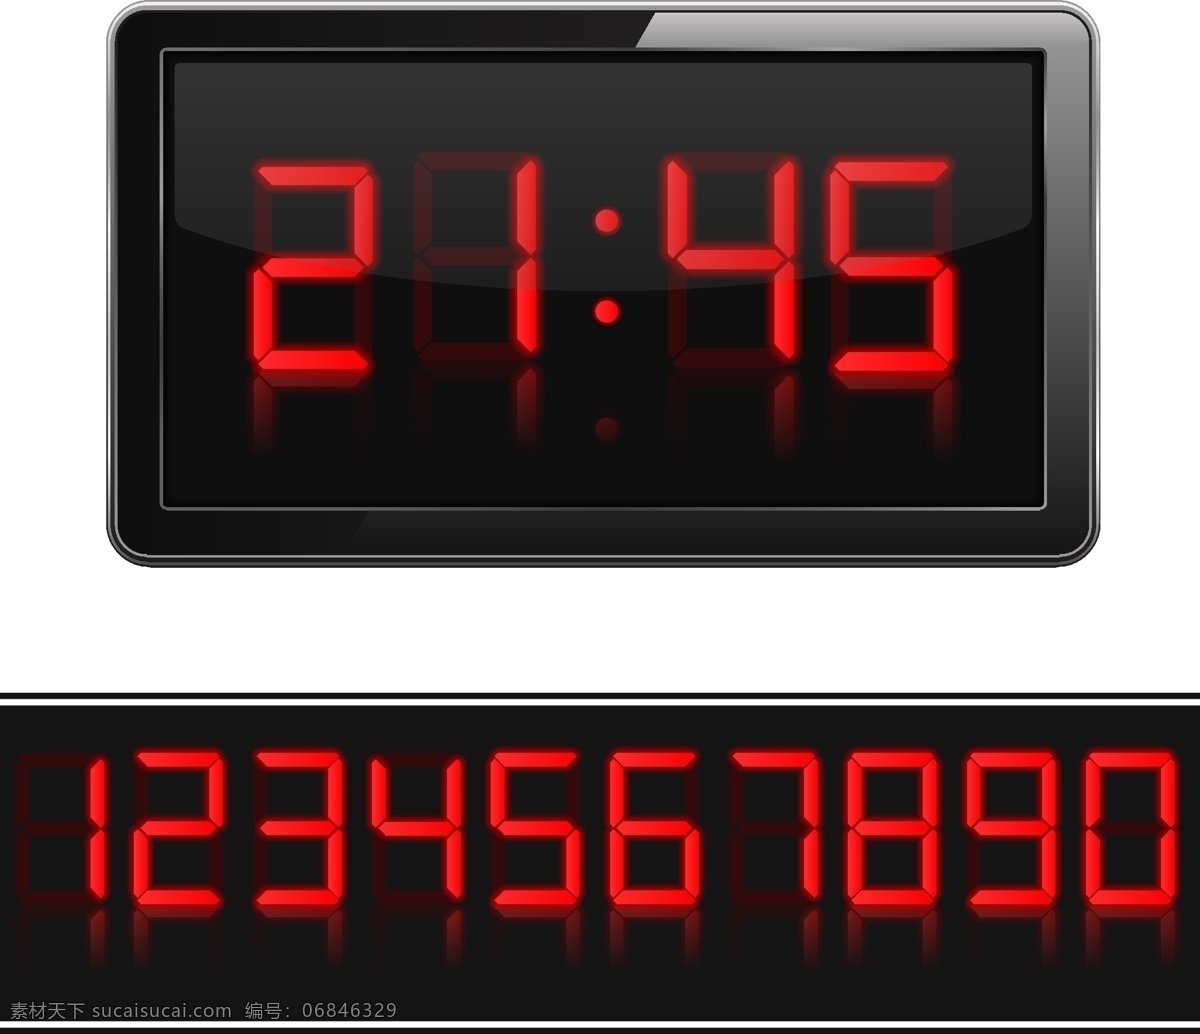 矢量 钟表 模板下载 数字 时间 图标 标签 生活百科 矢量素材 黑色